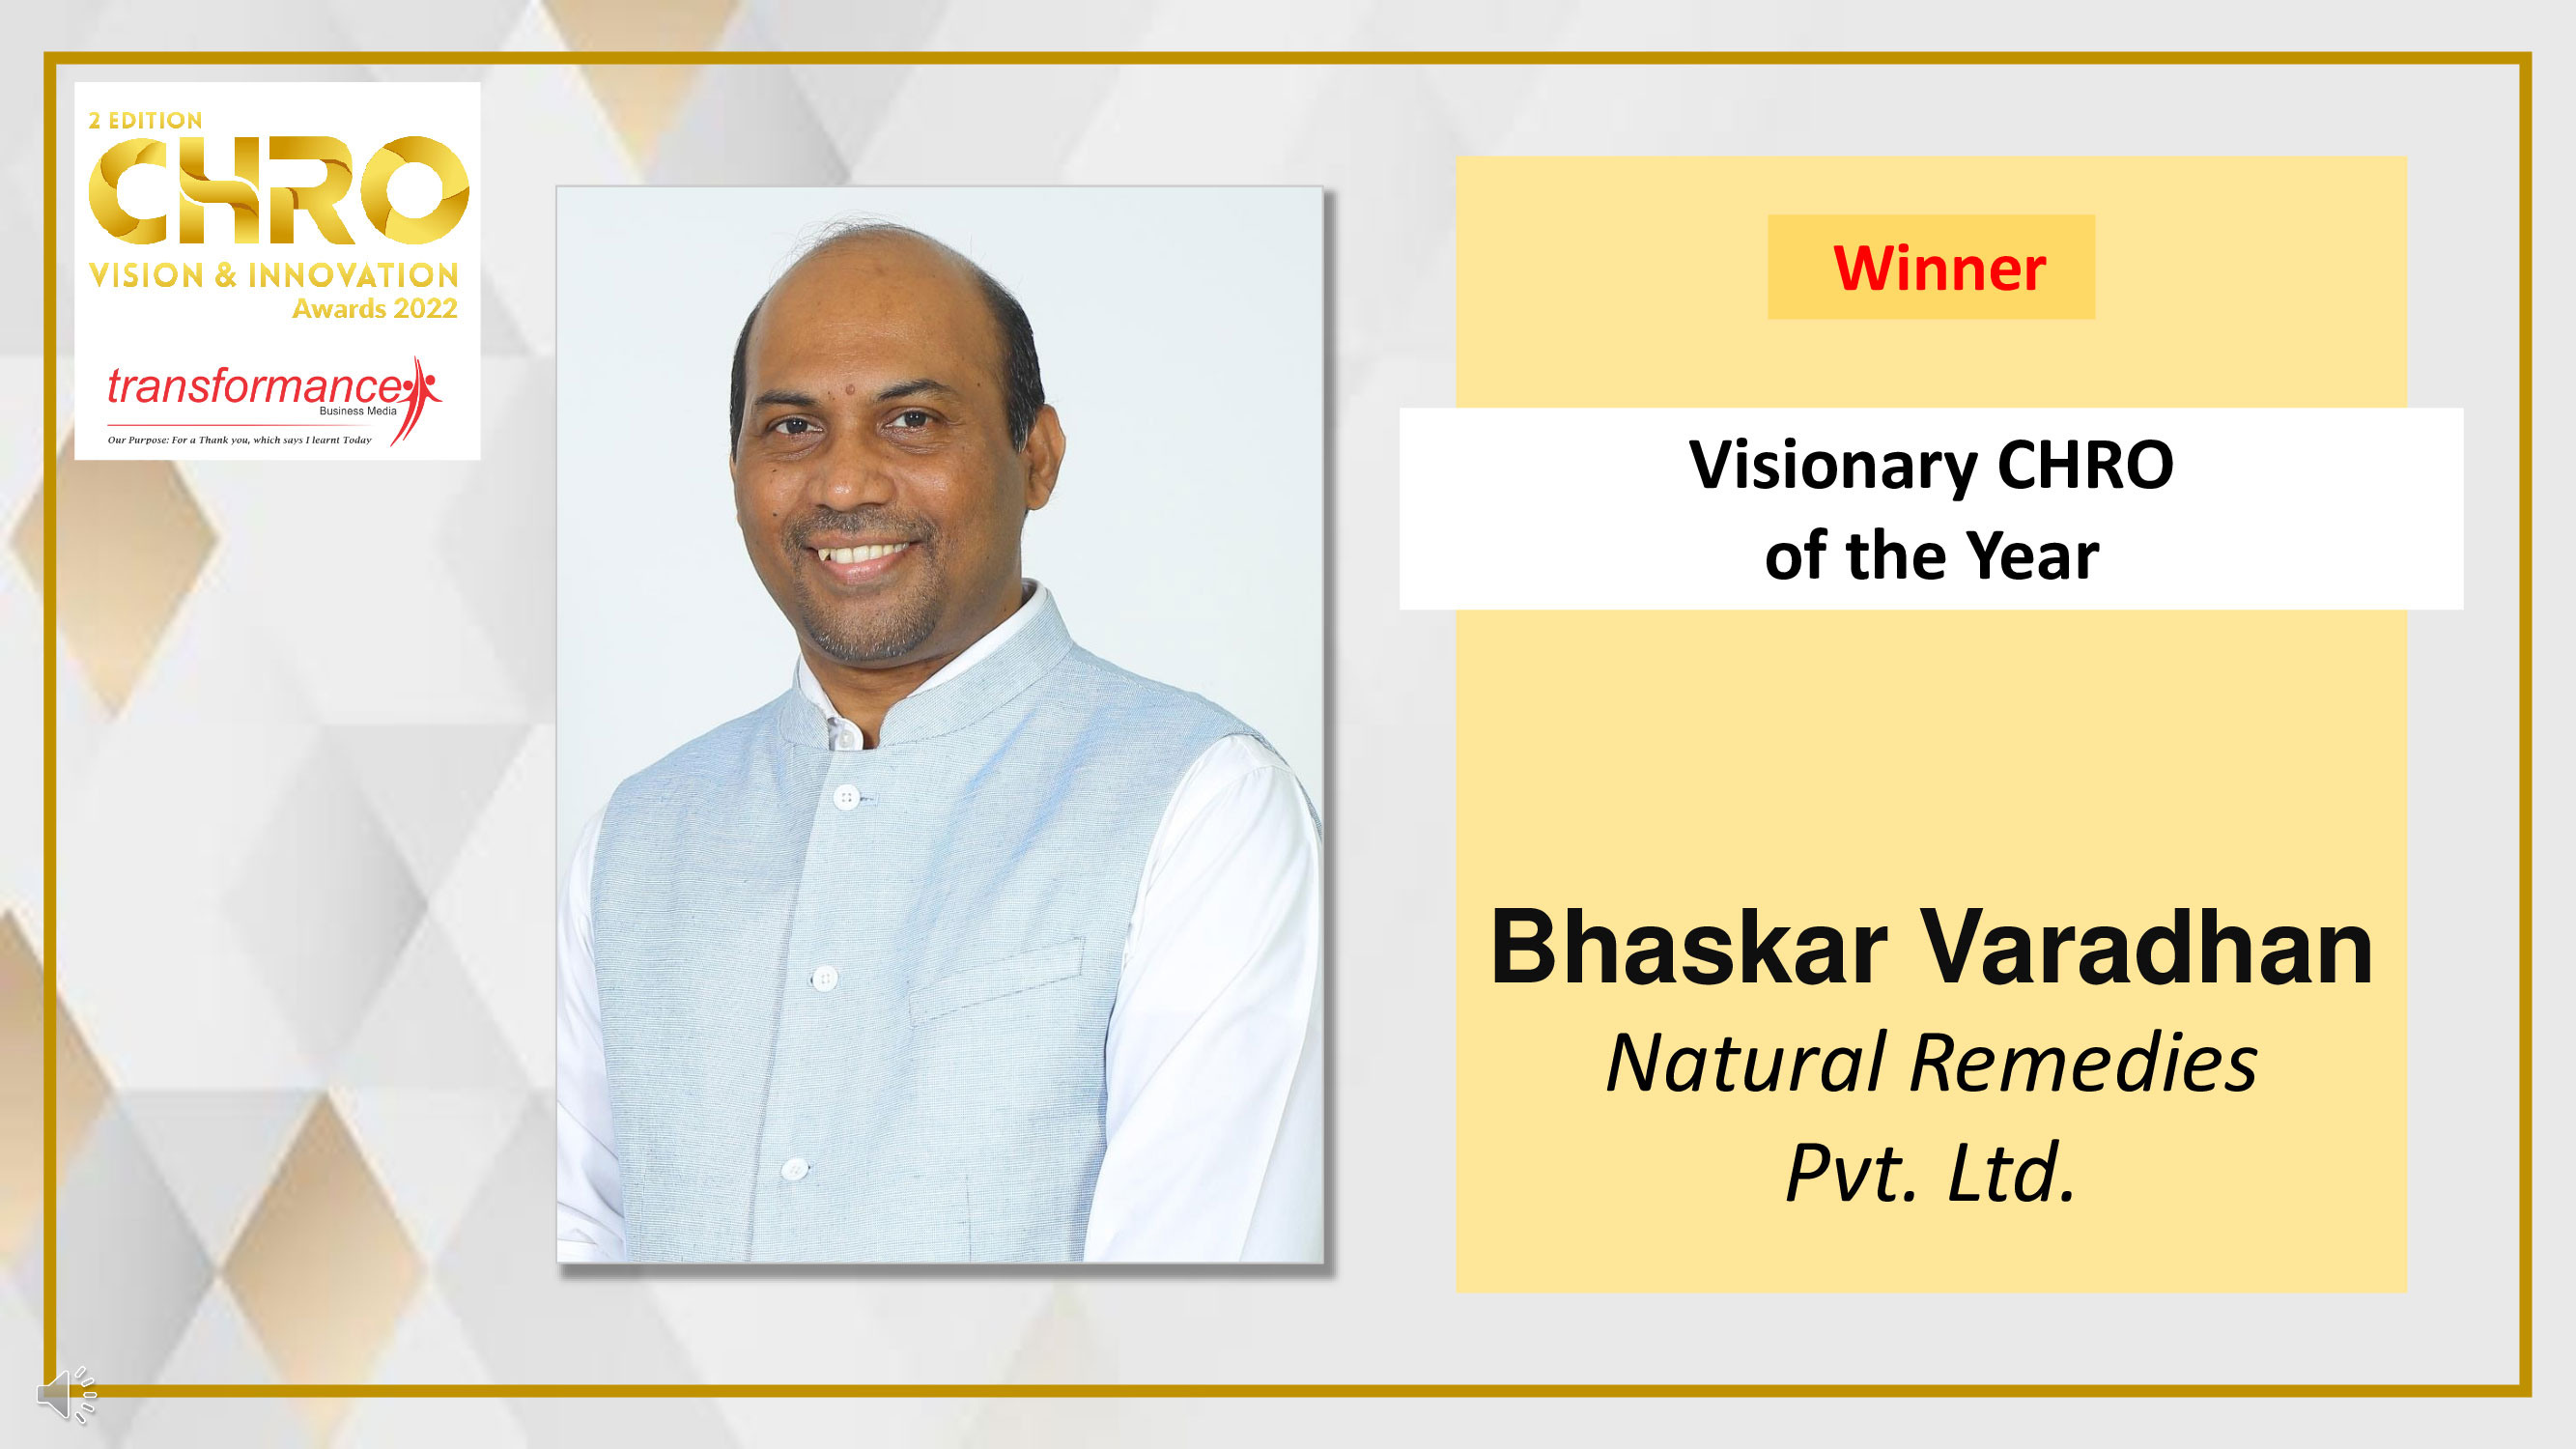 Bhaskar Varadhan, Natural Remedies Pvt. Ltd.